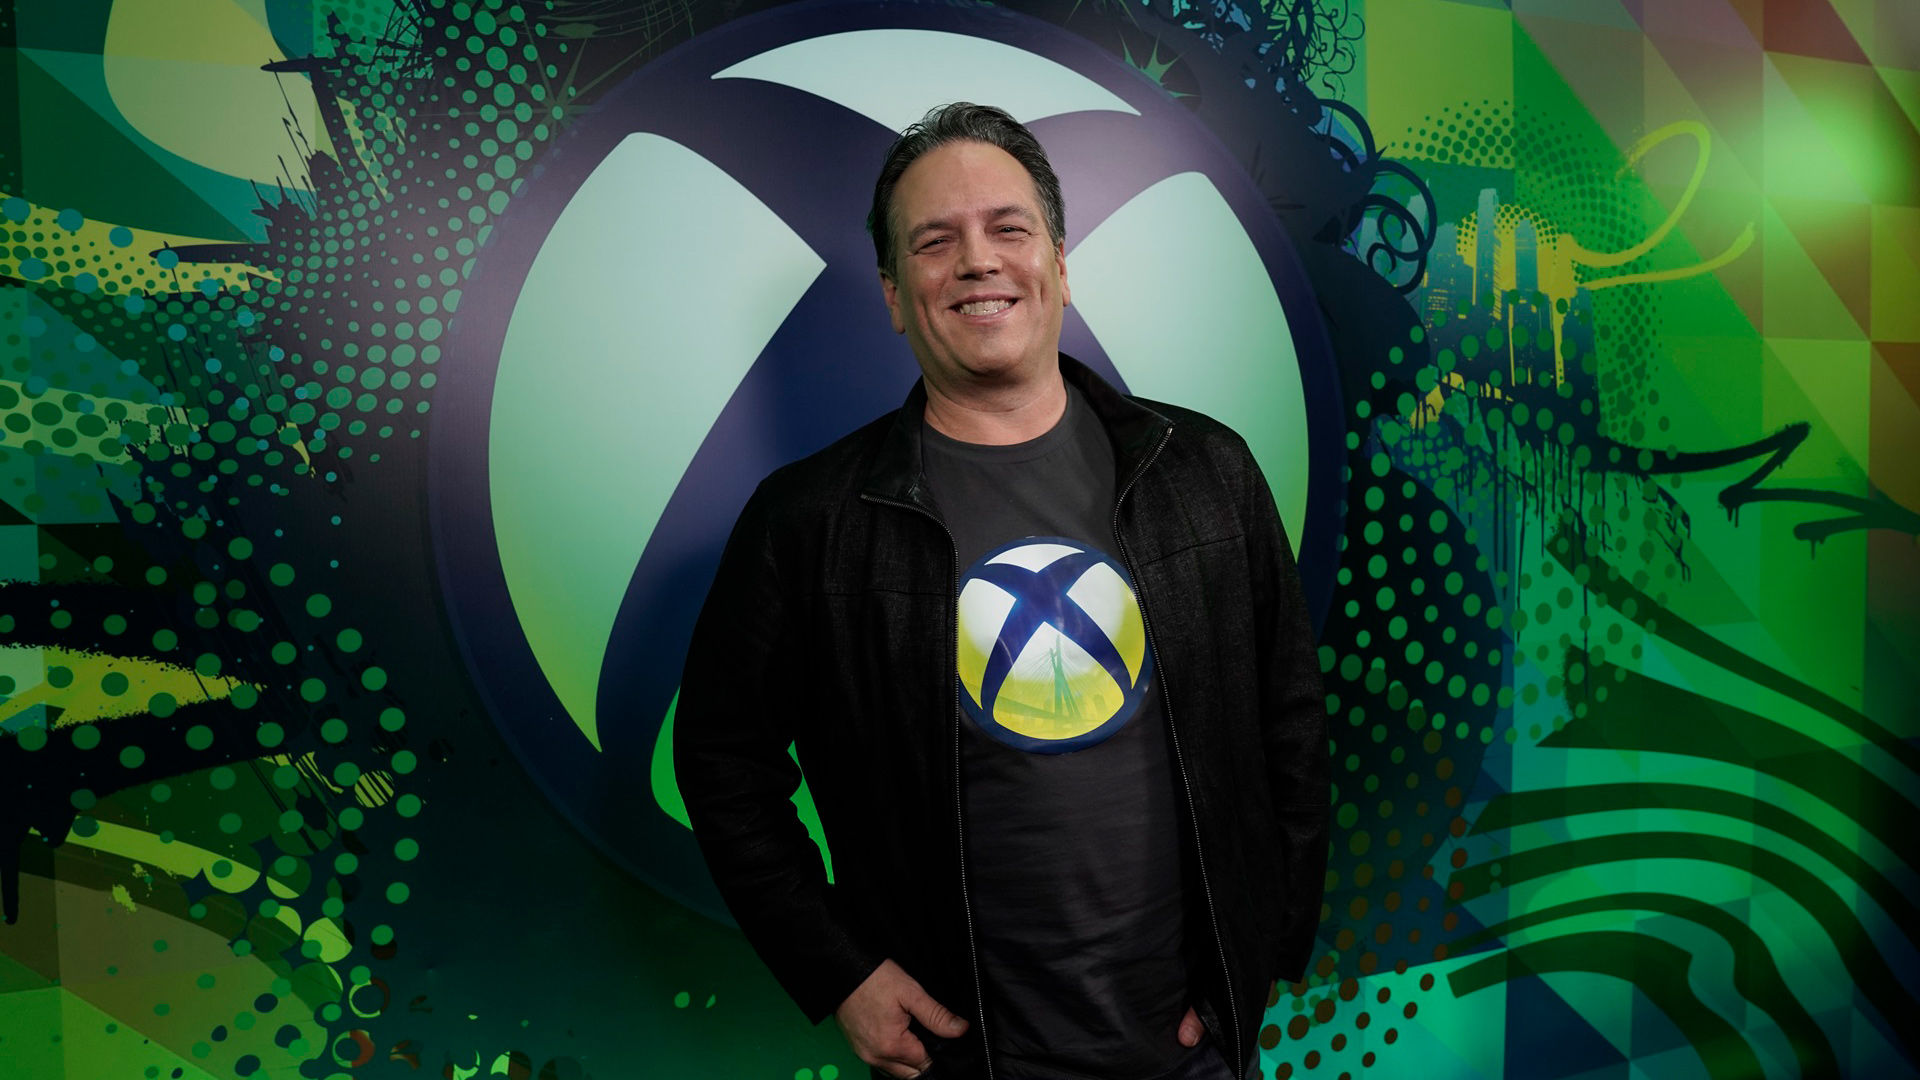 Фил Спенсер удваивает усилия по распространению эксклюзивов Xbox на большее количество платформ